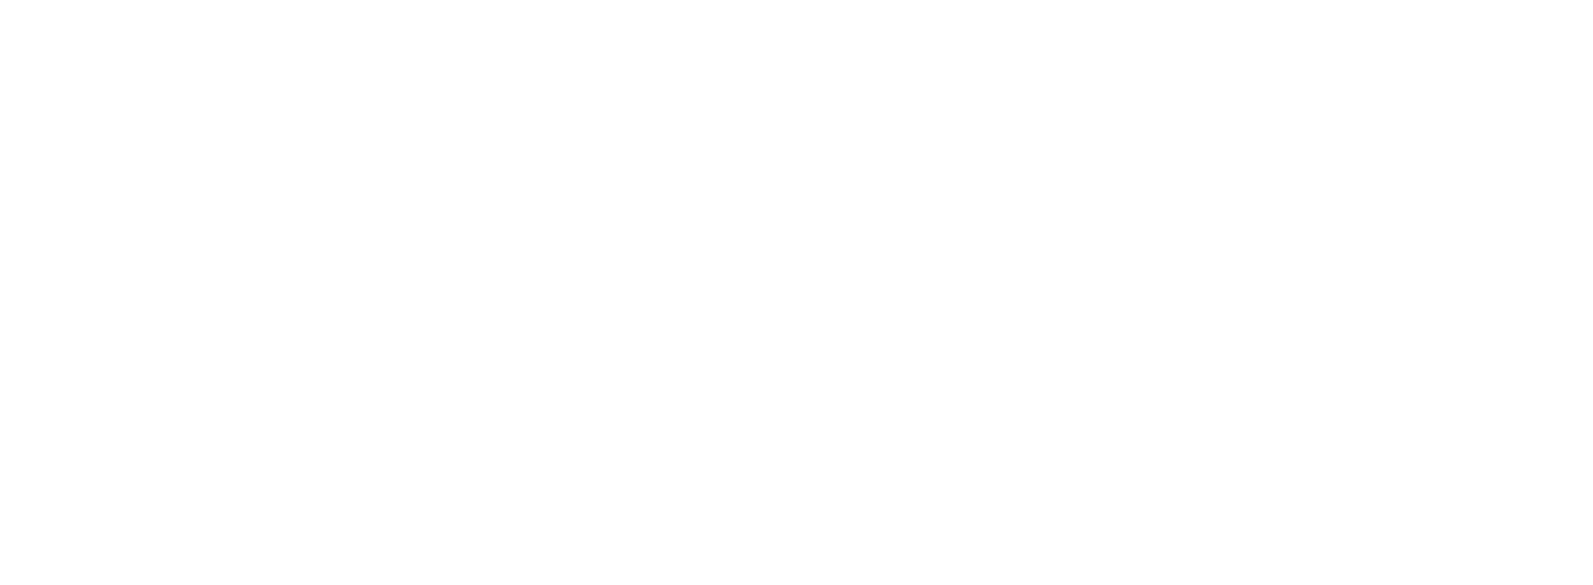 Münchner Hilfenetzwerke. Landeshauptstadt München, Referat für Gesundheit und Umwelt